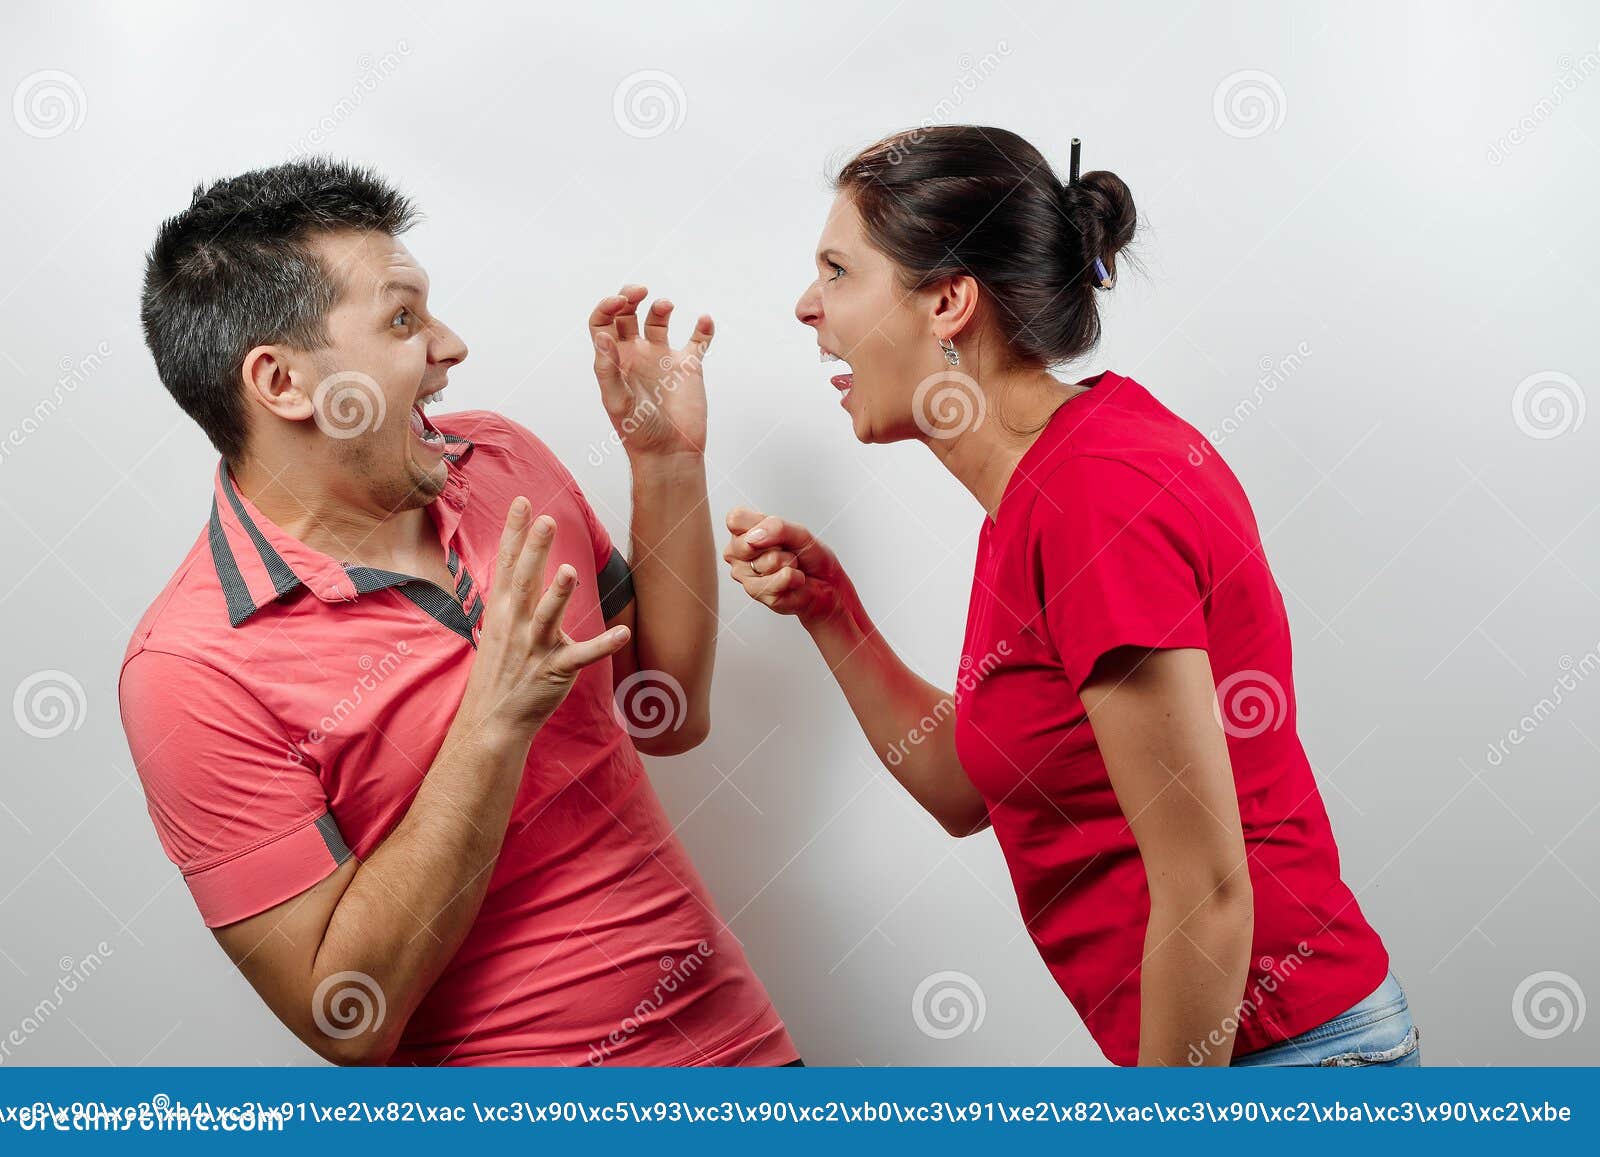 Жена ругаться будет. Женщина кричит на мужа. Жена ругается. Ссора картинки. Жена кричит на мужа.